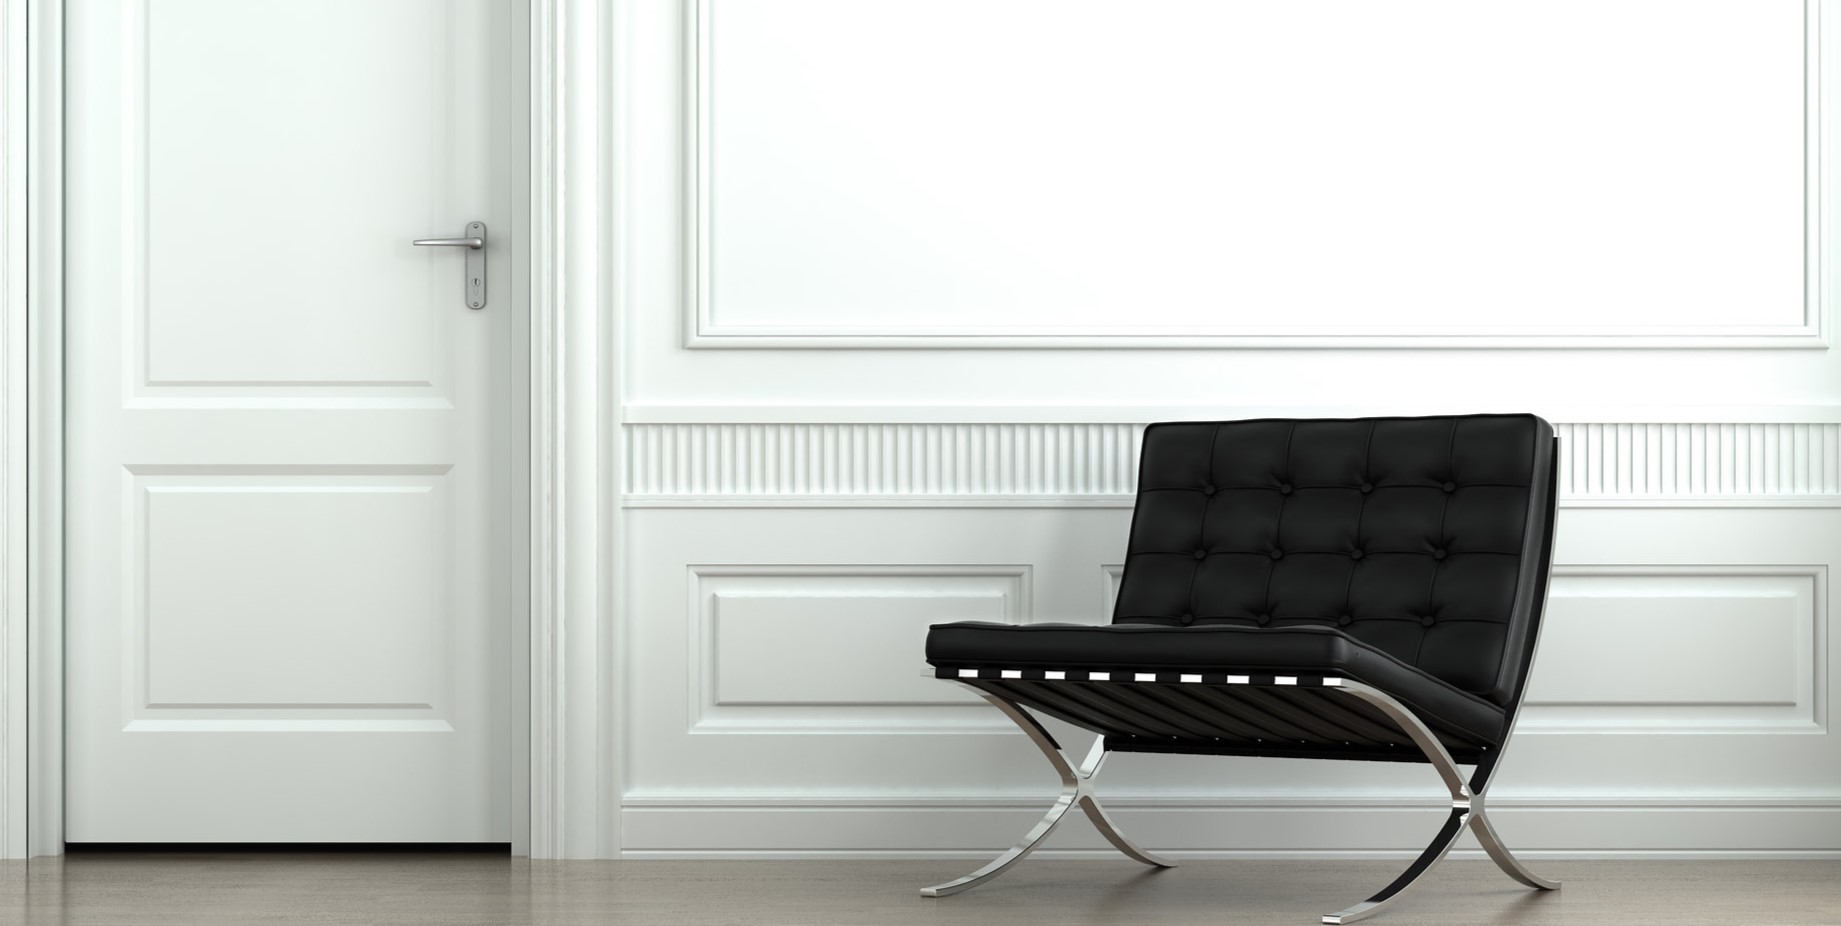 Черное кресло стильно смотрится на фоне белых стен